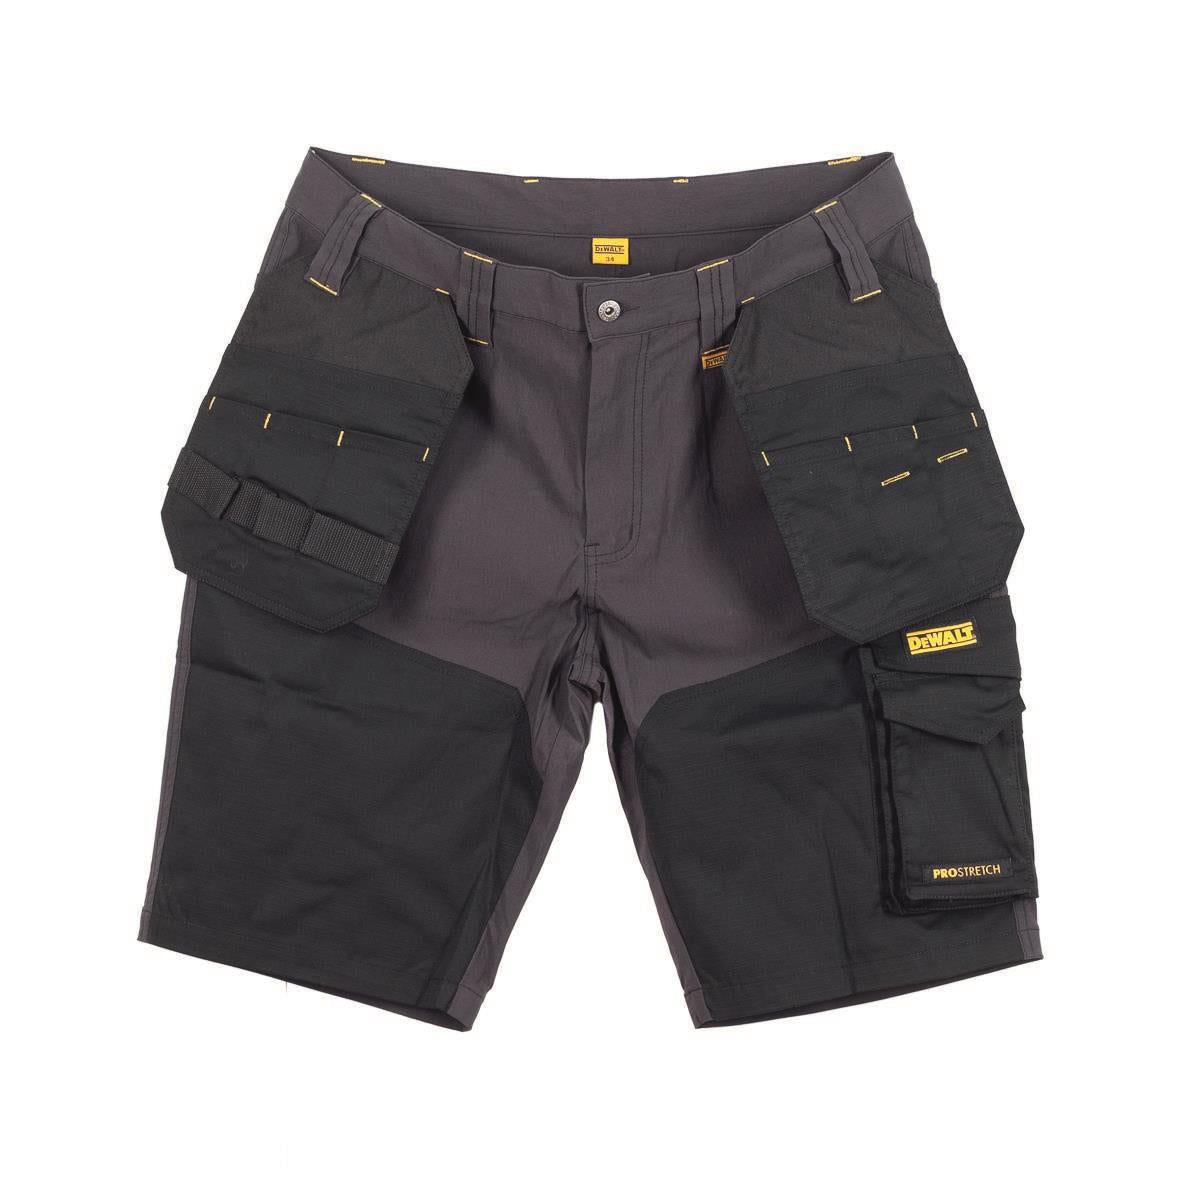 DeWalt Hamden grey/black twin holster pockets work shorts